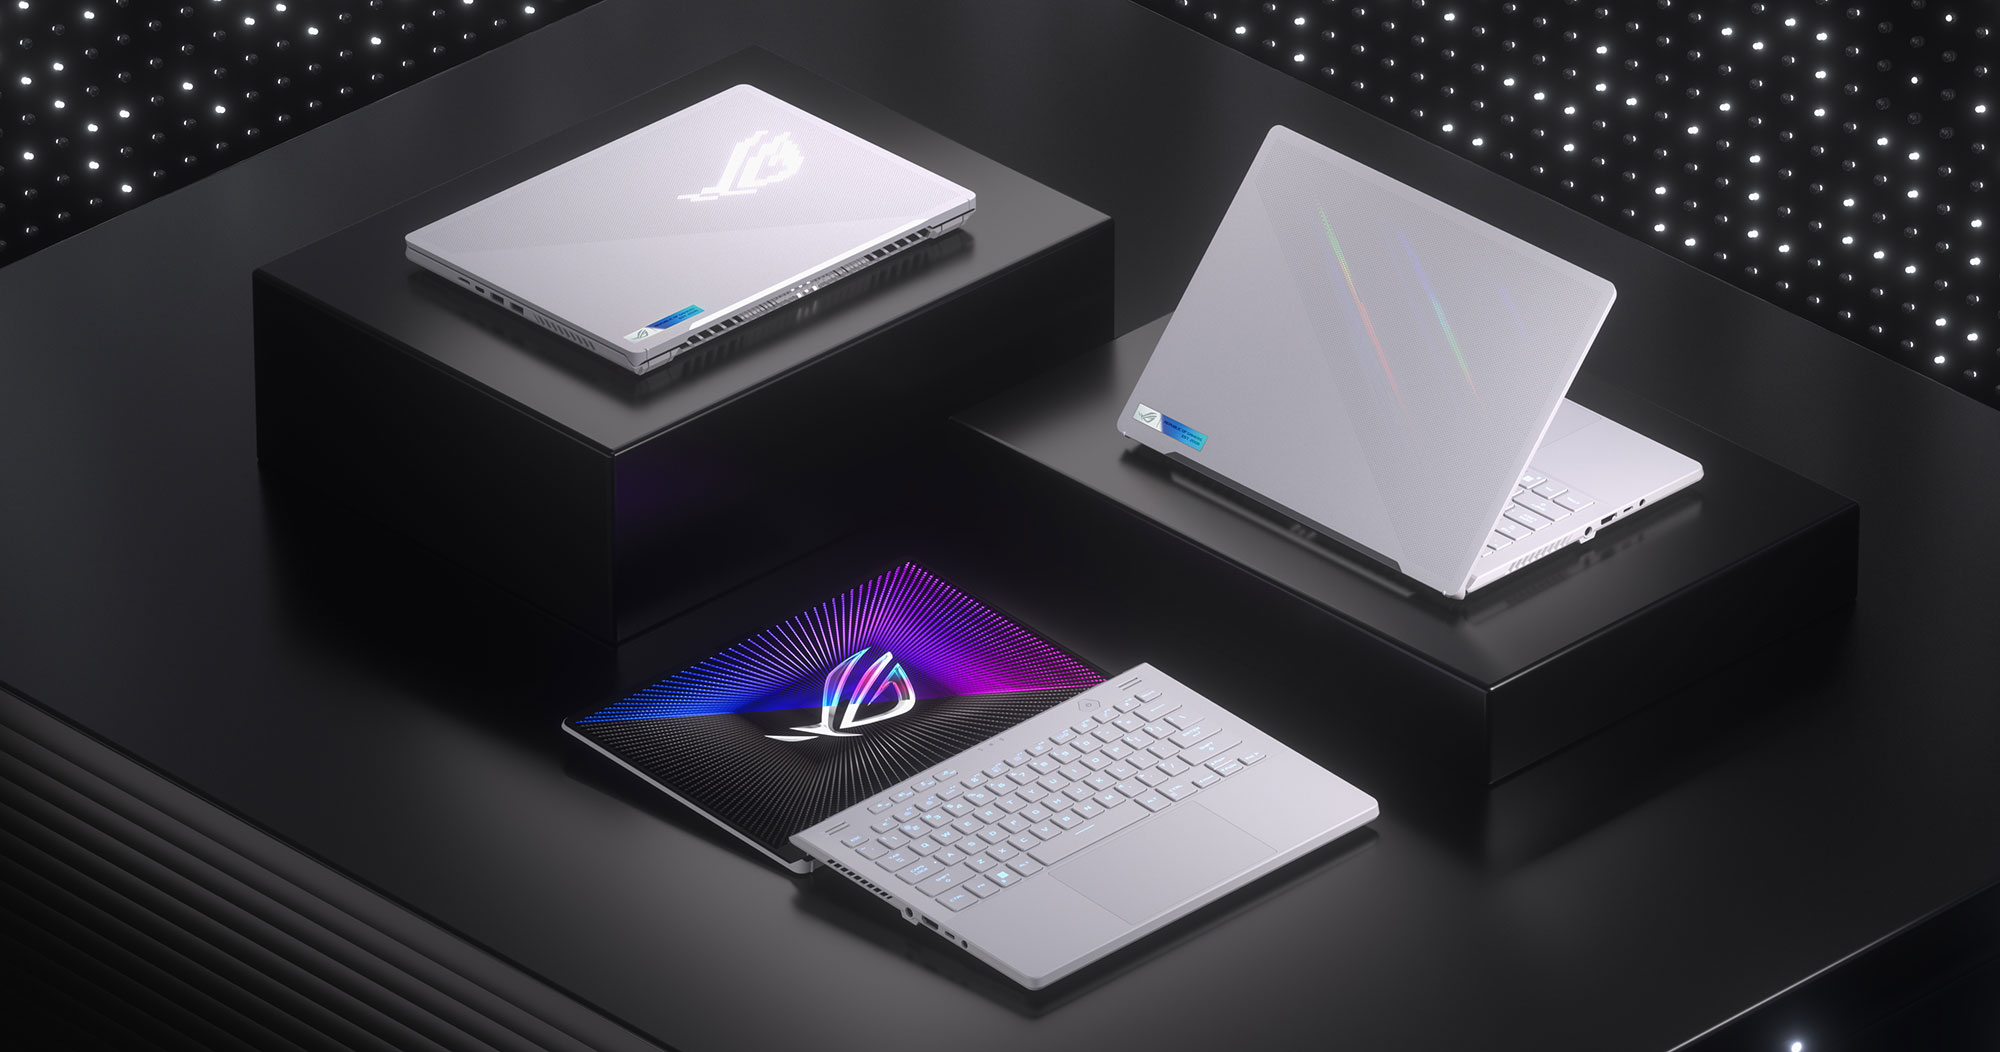 ASUS a présenté une nouvelle génération d'ordinateurs portables